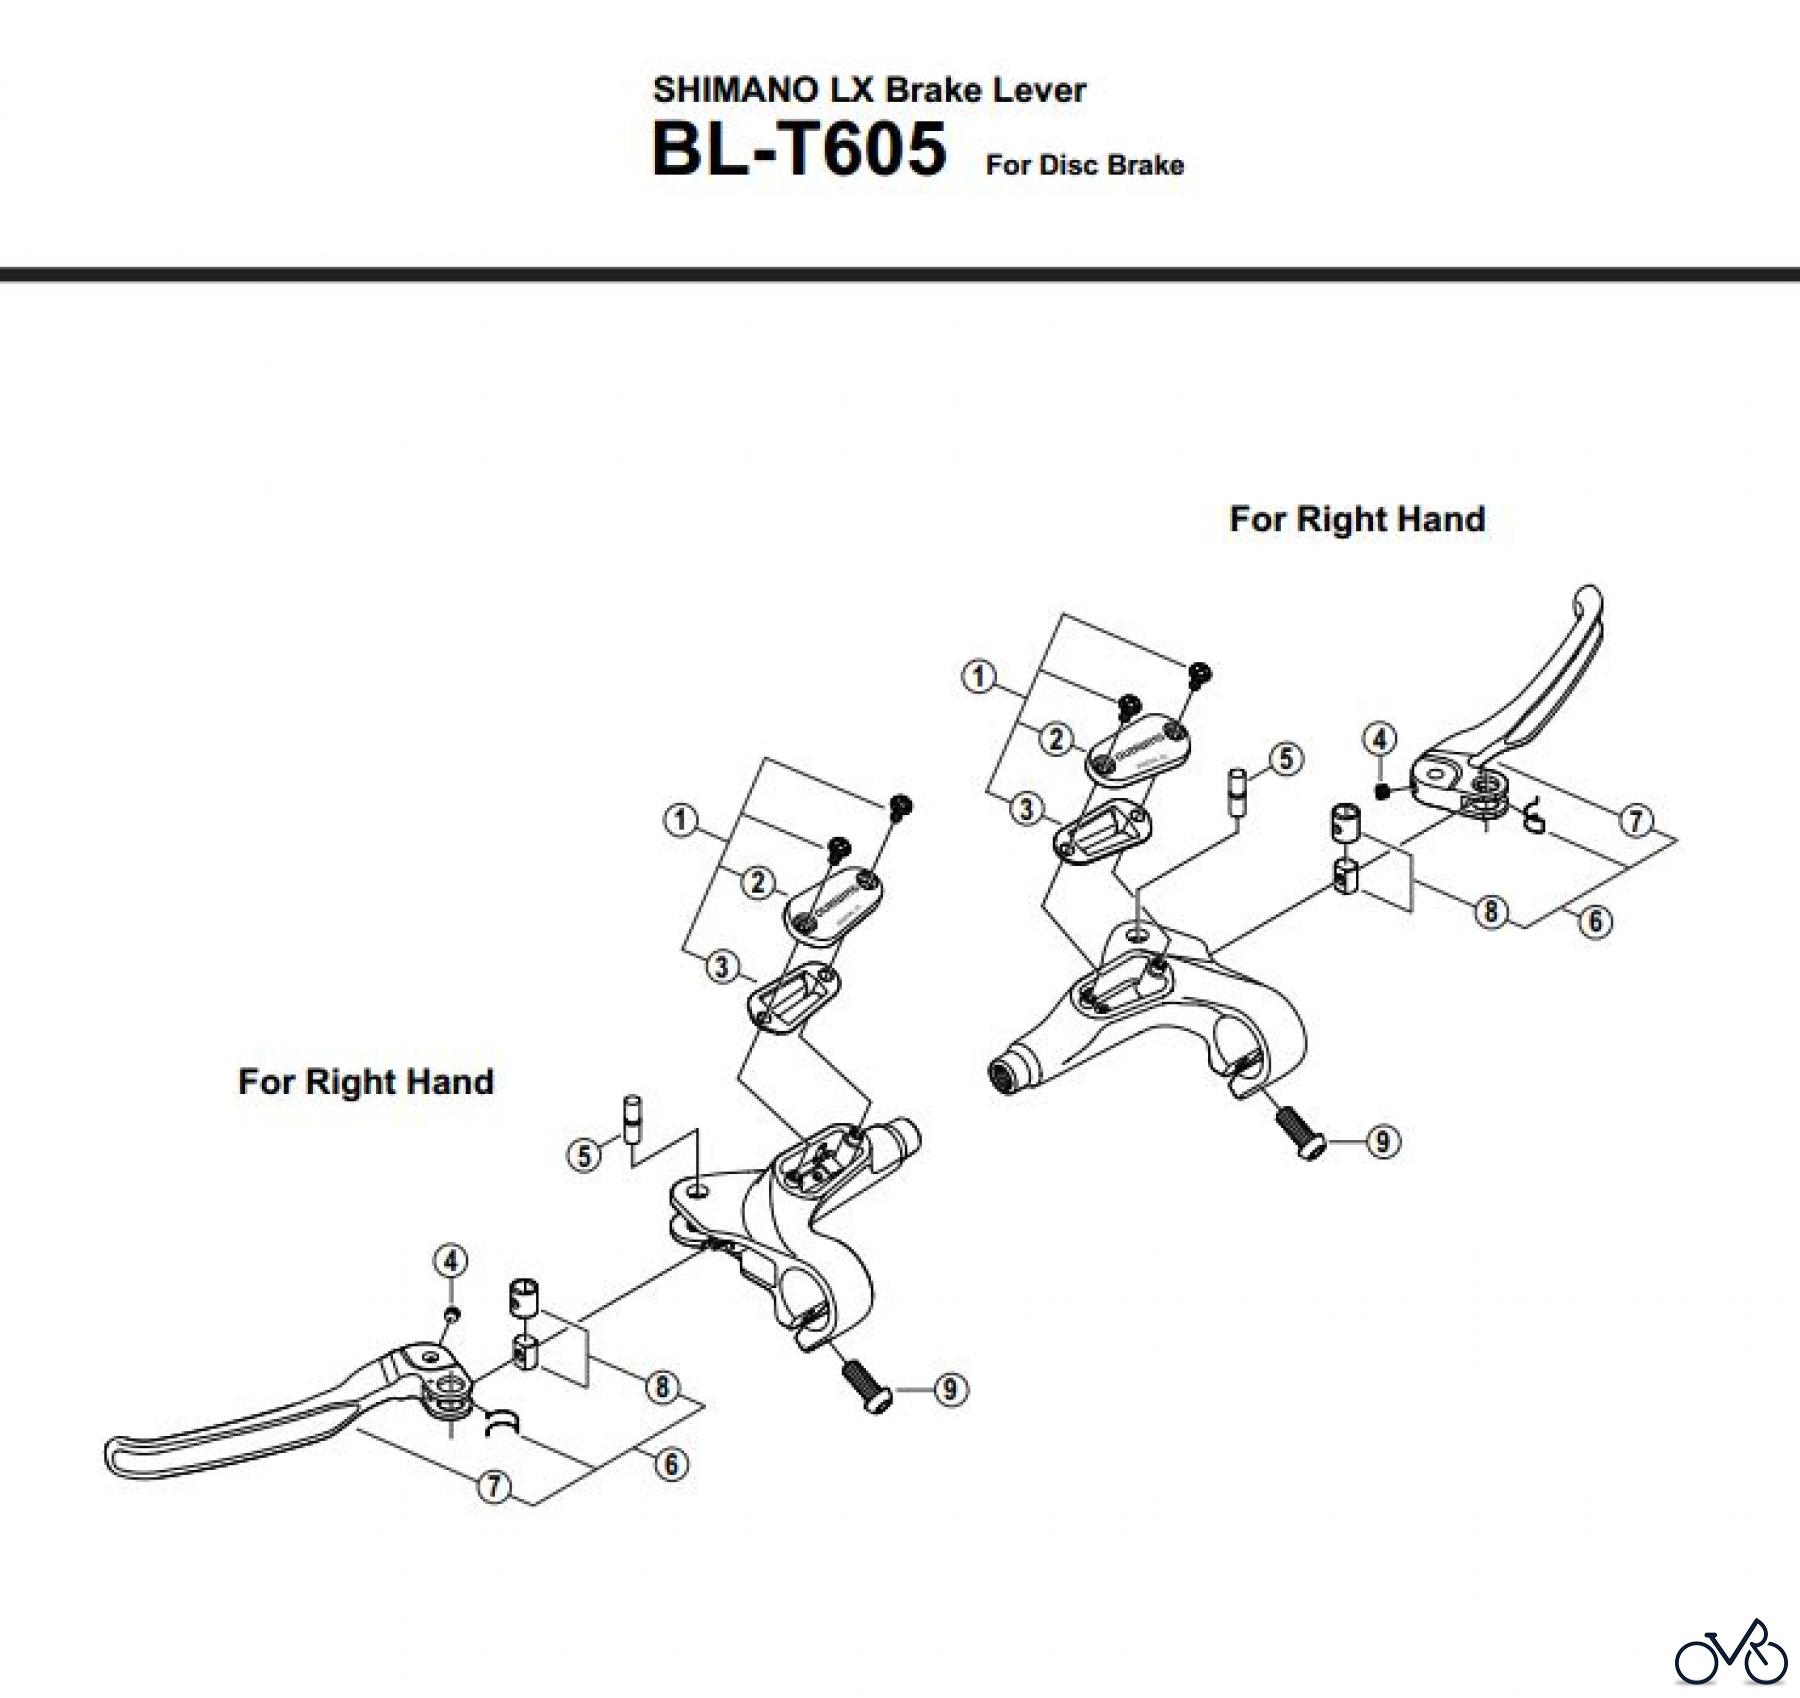  Shimano BL Brake Lever - Bremshebel BL-T605-2865